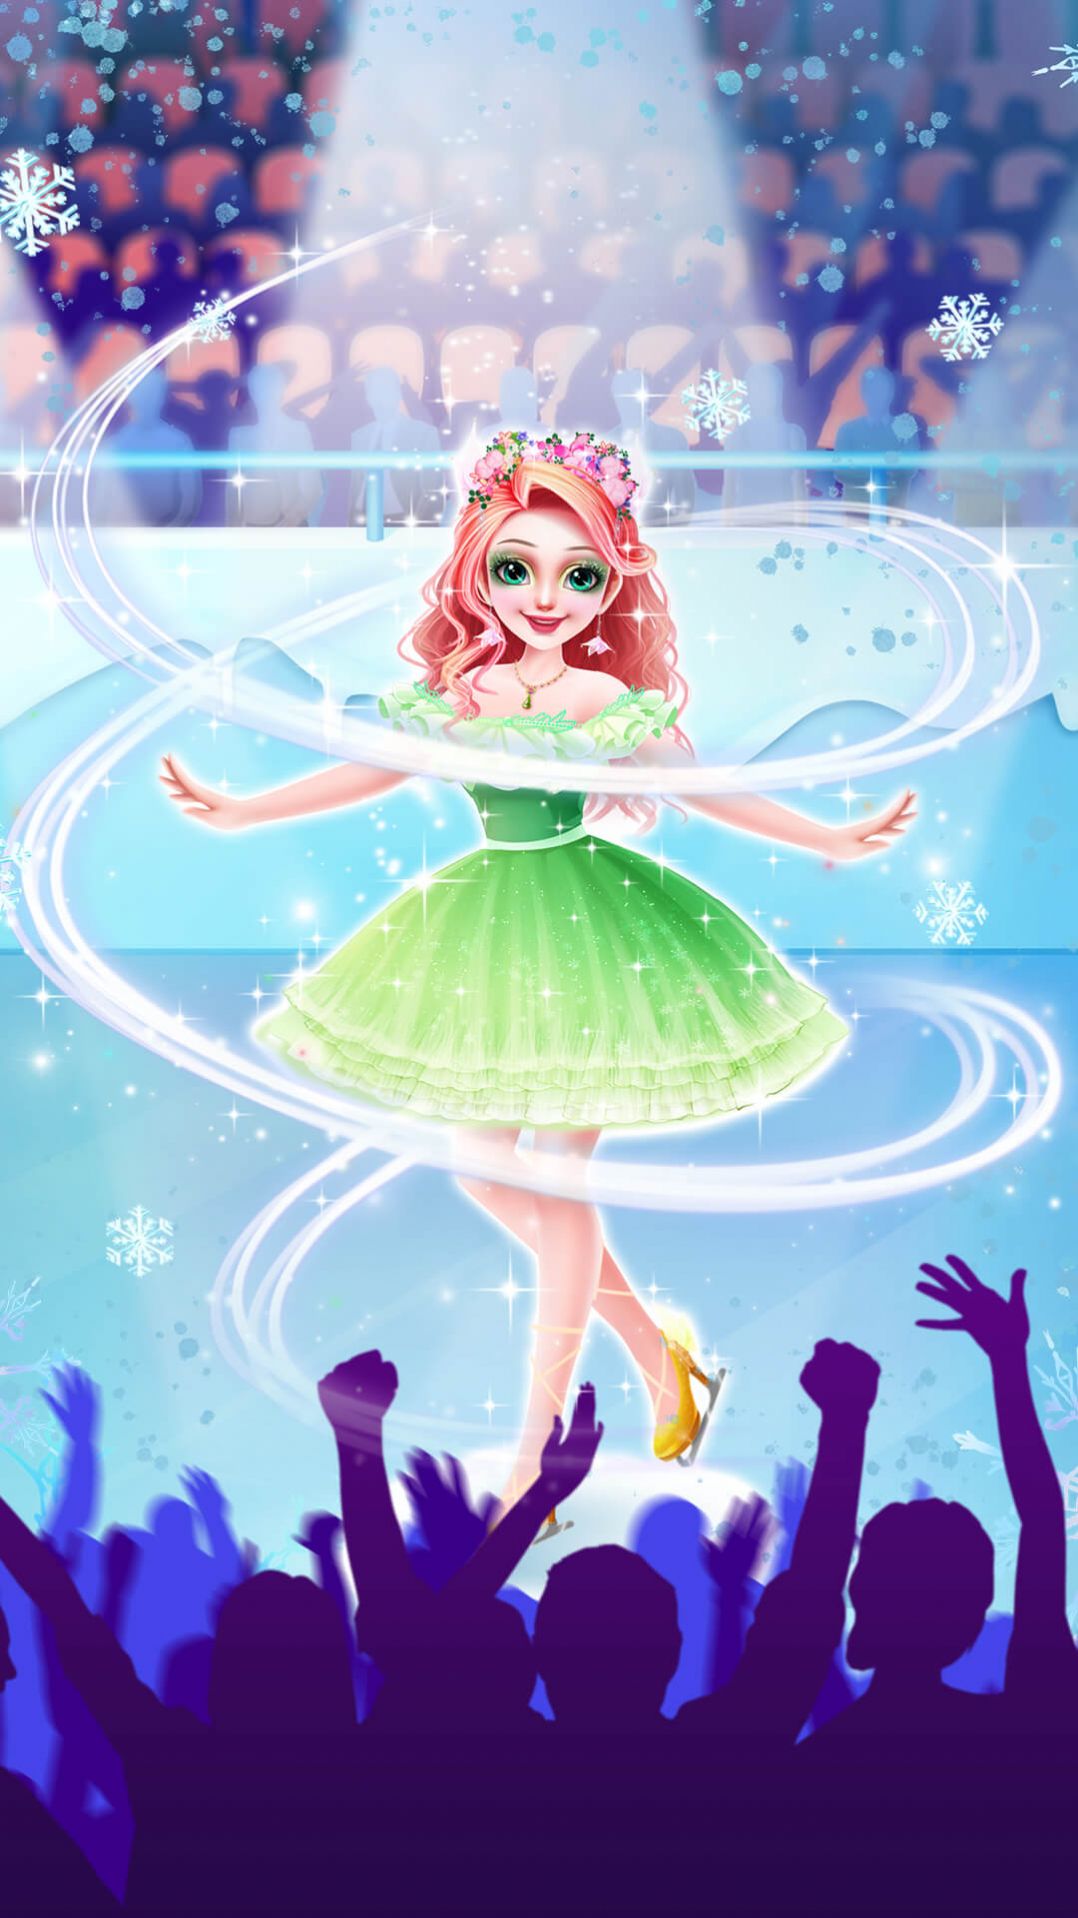 公主花样滑冰艺术游戏3